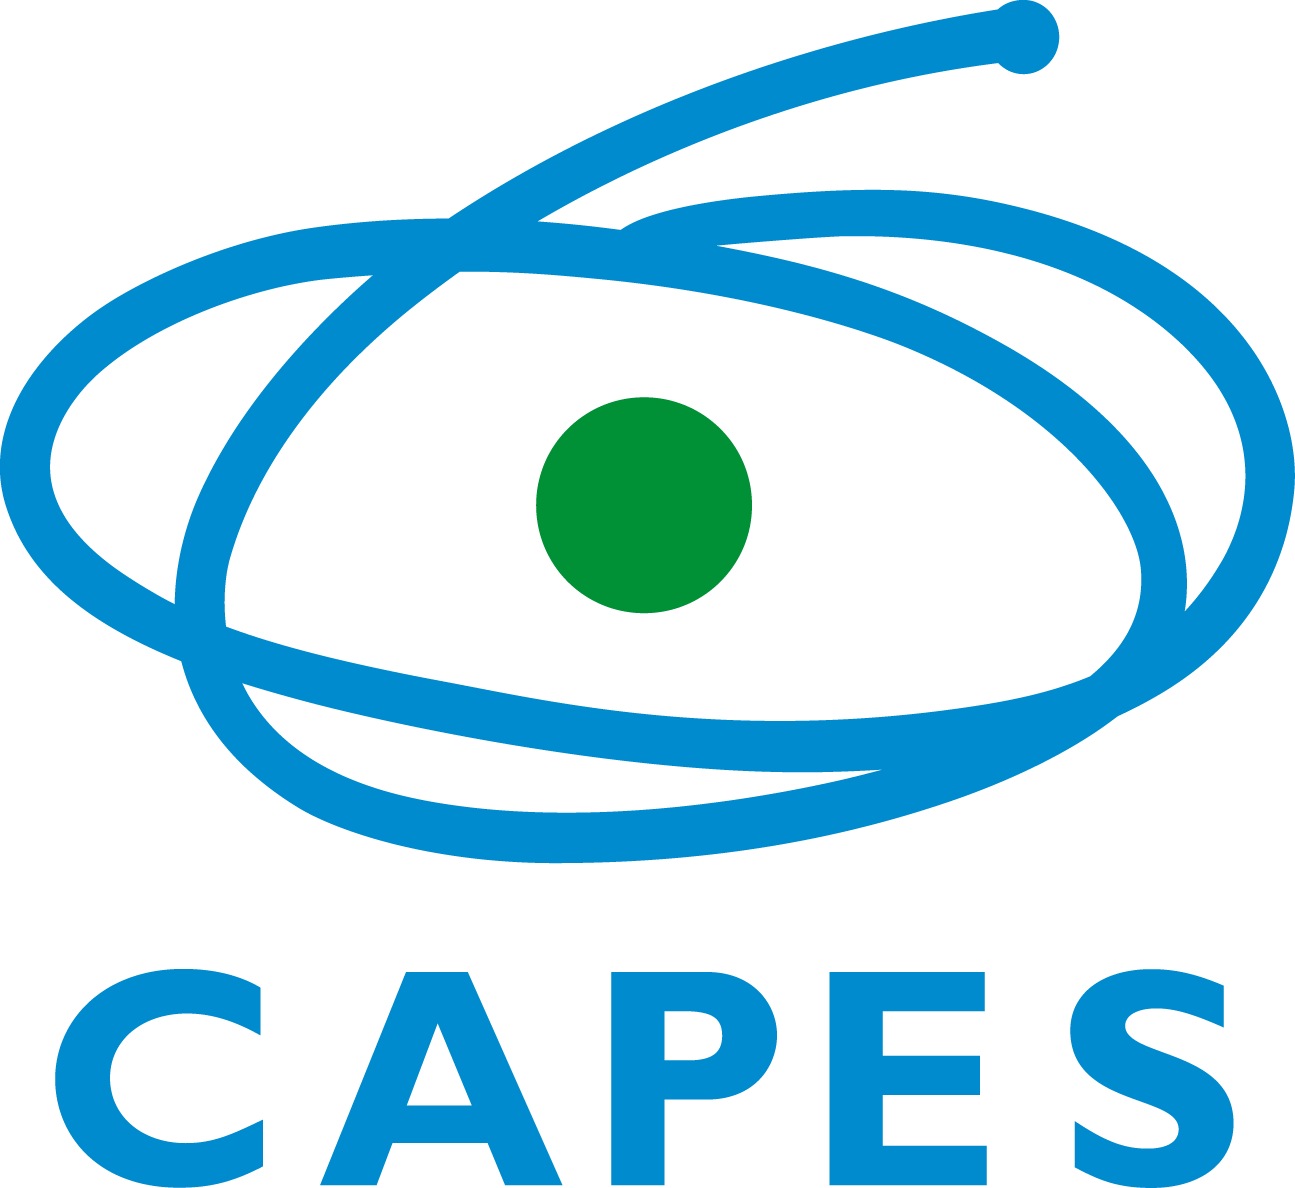 CAPES - Coordenação de Aperfeiçoamento de Pessoal de Nível Superior - CAPES